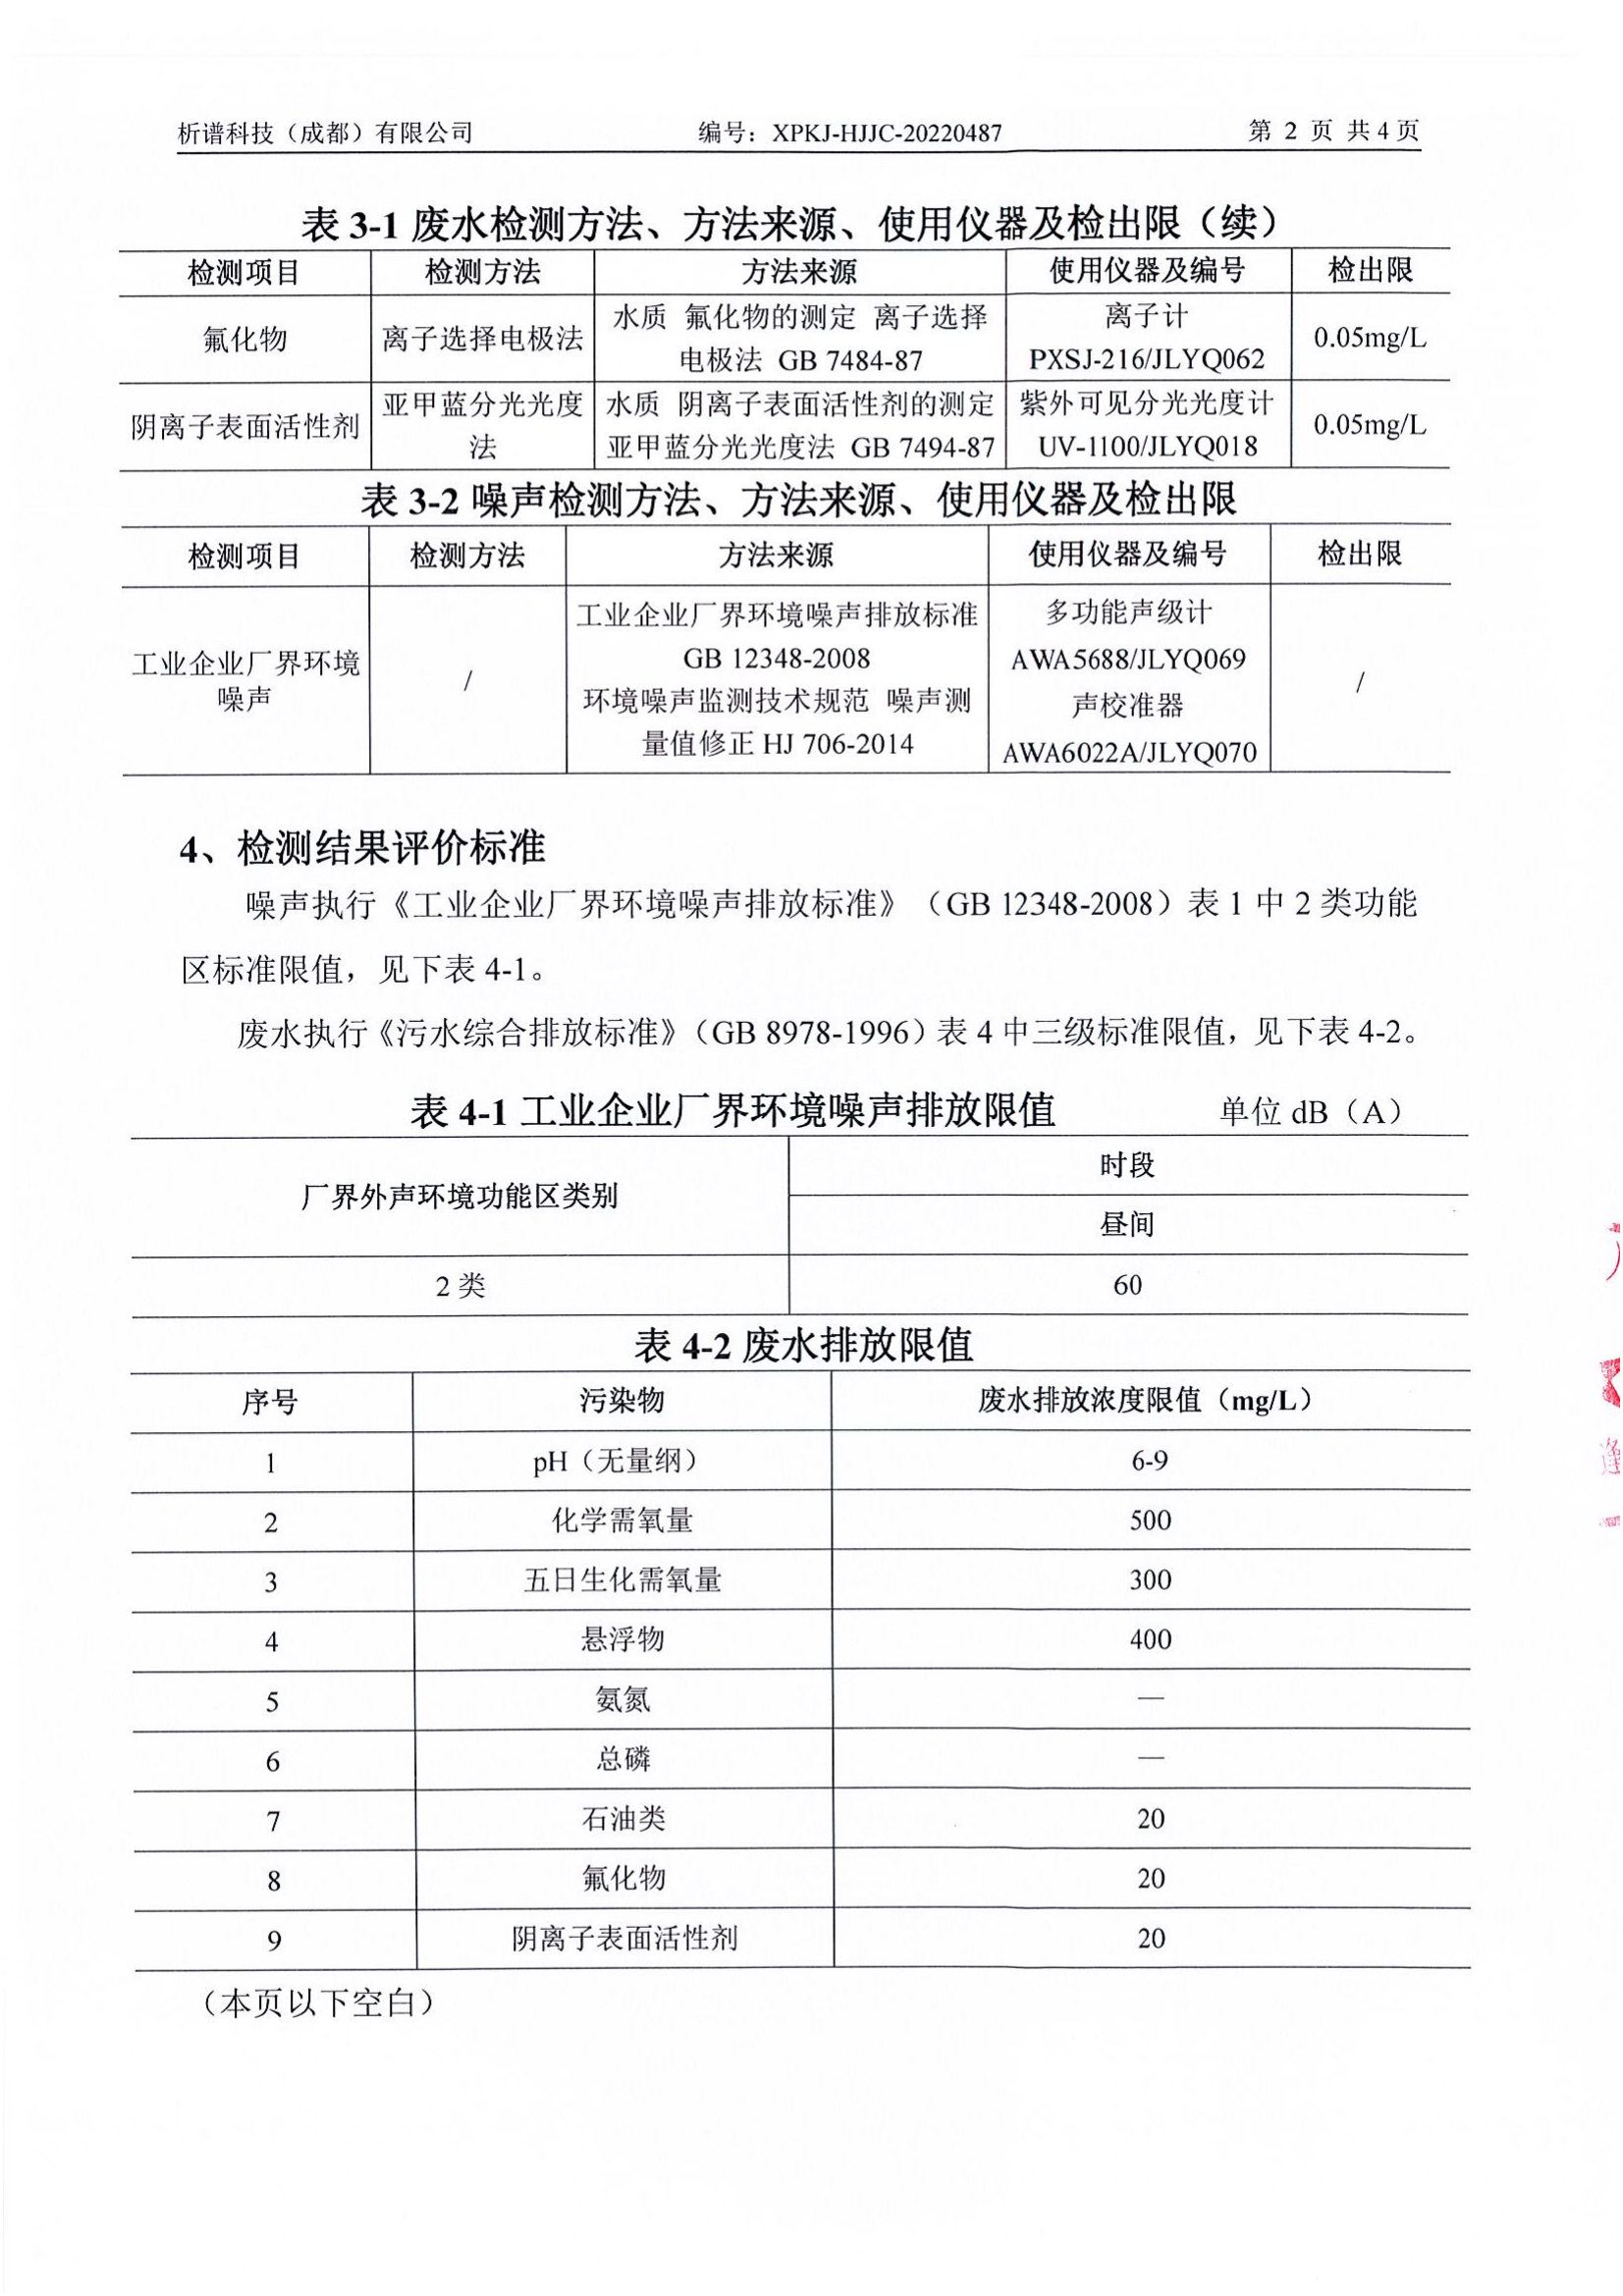 德阳凯达门业有限公司废水噪声7月报告_03.png